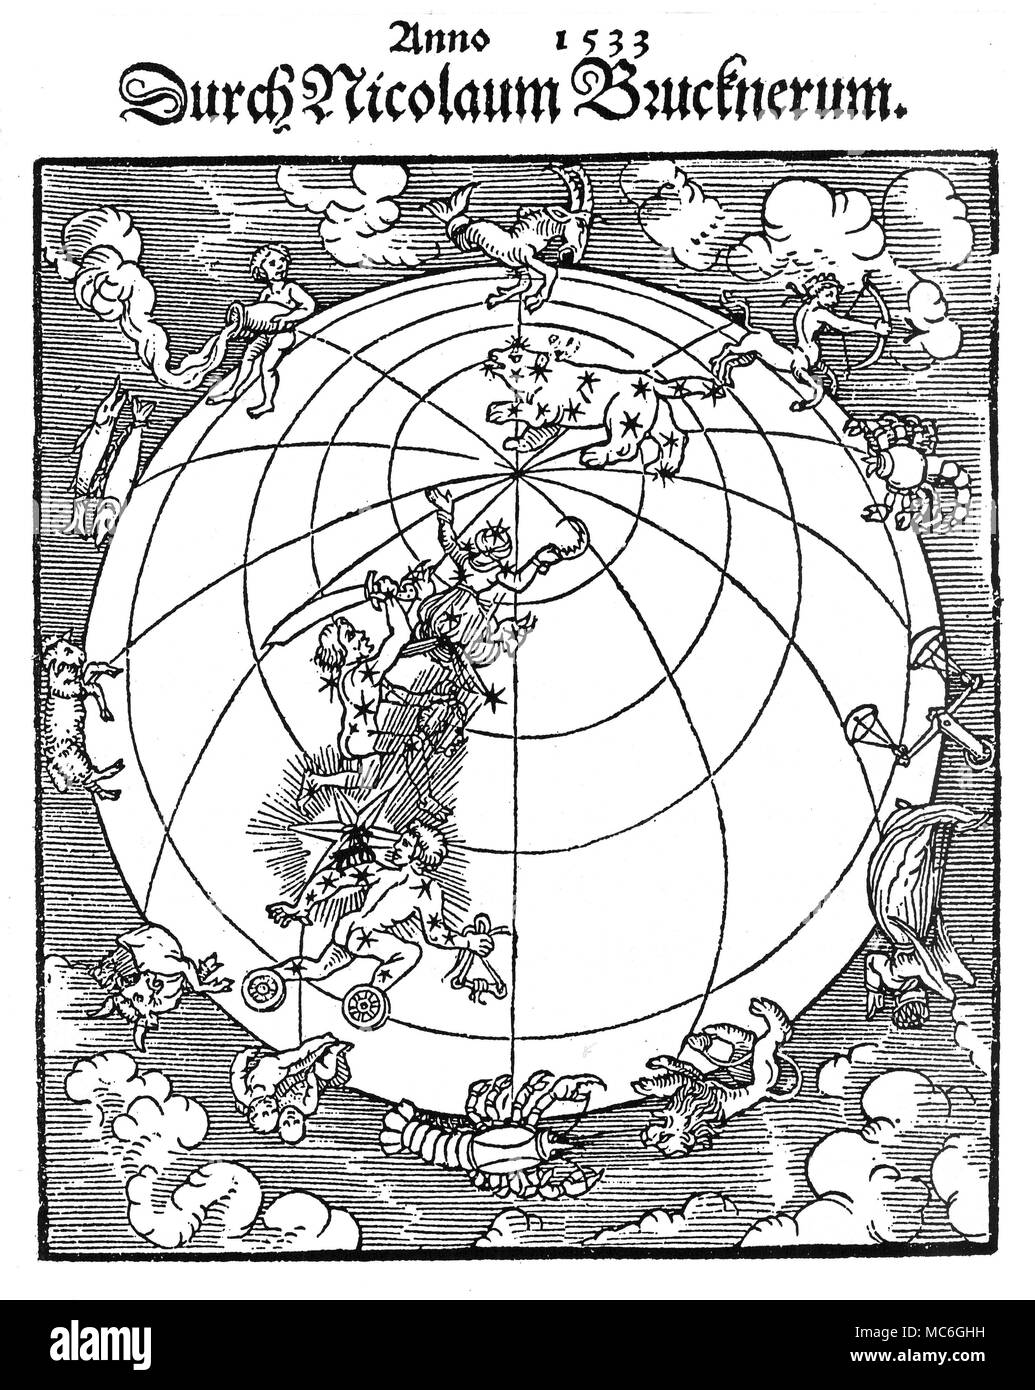 Astrologie - Les comètes la comète de 1533, à partir de l'titlepage de Nicolas Bruckner, Ein kurtzer bericht unnd ausslegungÃ. 1533. Cet intéressant bois-cut indique la direction prise par la comète, à travers les constellations Auriga (ici représenté comme un conducteur de char avec roues sur ses pieds), Perseus, tenant son épée et la tête de la Gorgone Méduse, dans la direction de la Grande Ourse. Parce que nous regarder vers le bas sur le nord-pôle dans cette projection, nous avons l'occasion de voir les 12 images du zodiaque, autour de l'écliptique. Banque D'Images